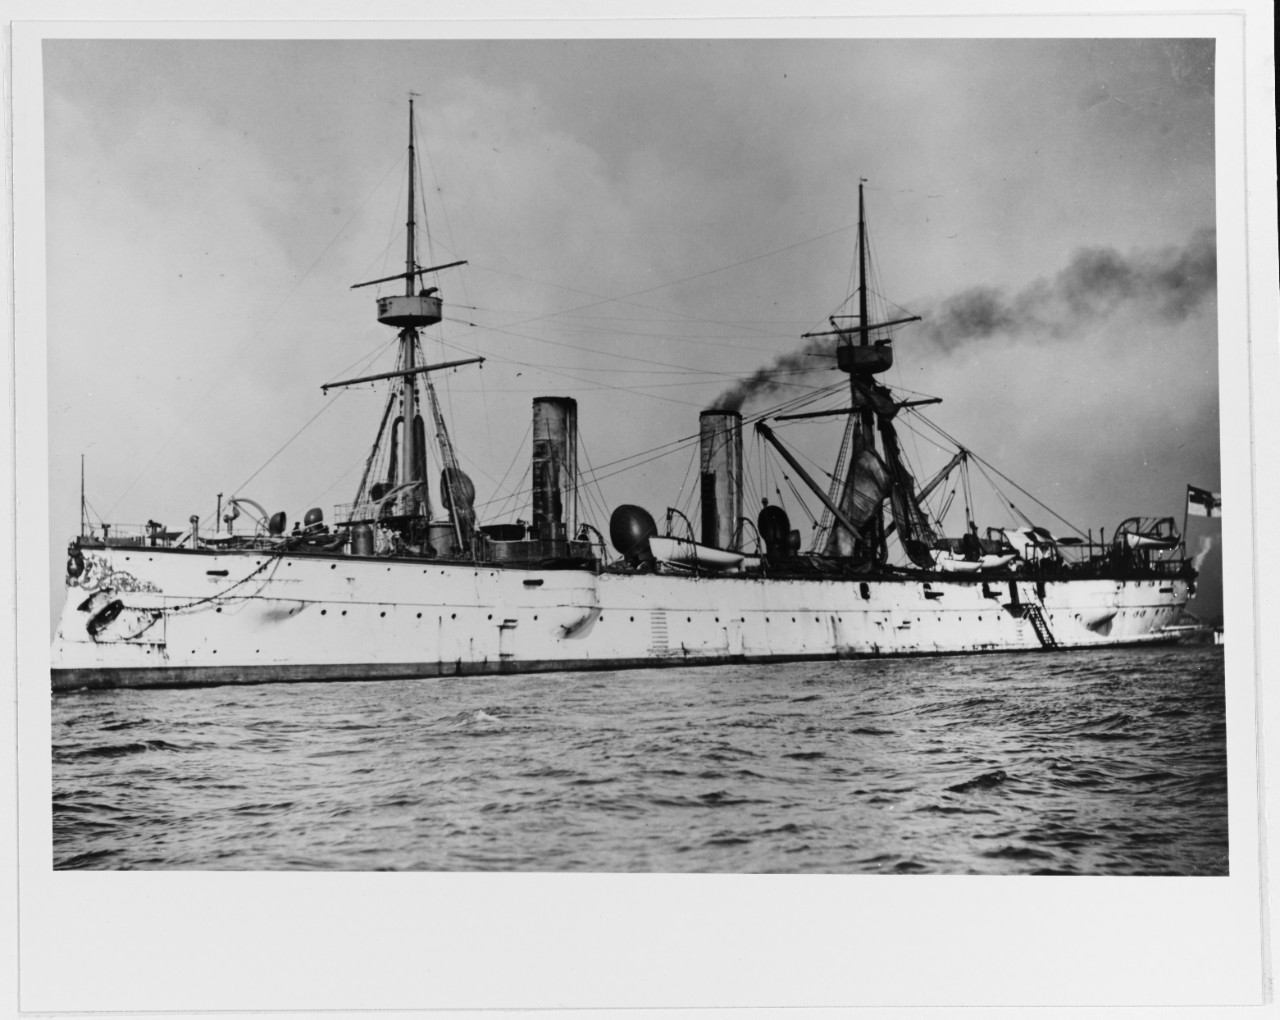 PRINZESS WILHELM (German cruiser, 1887-1921)